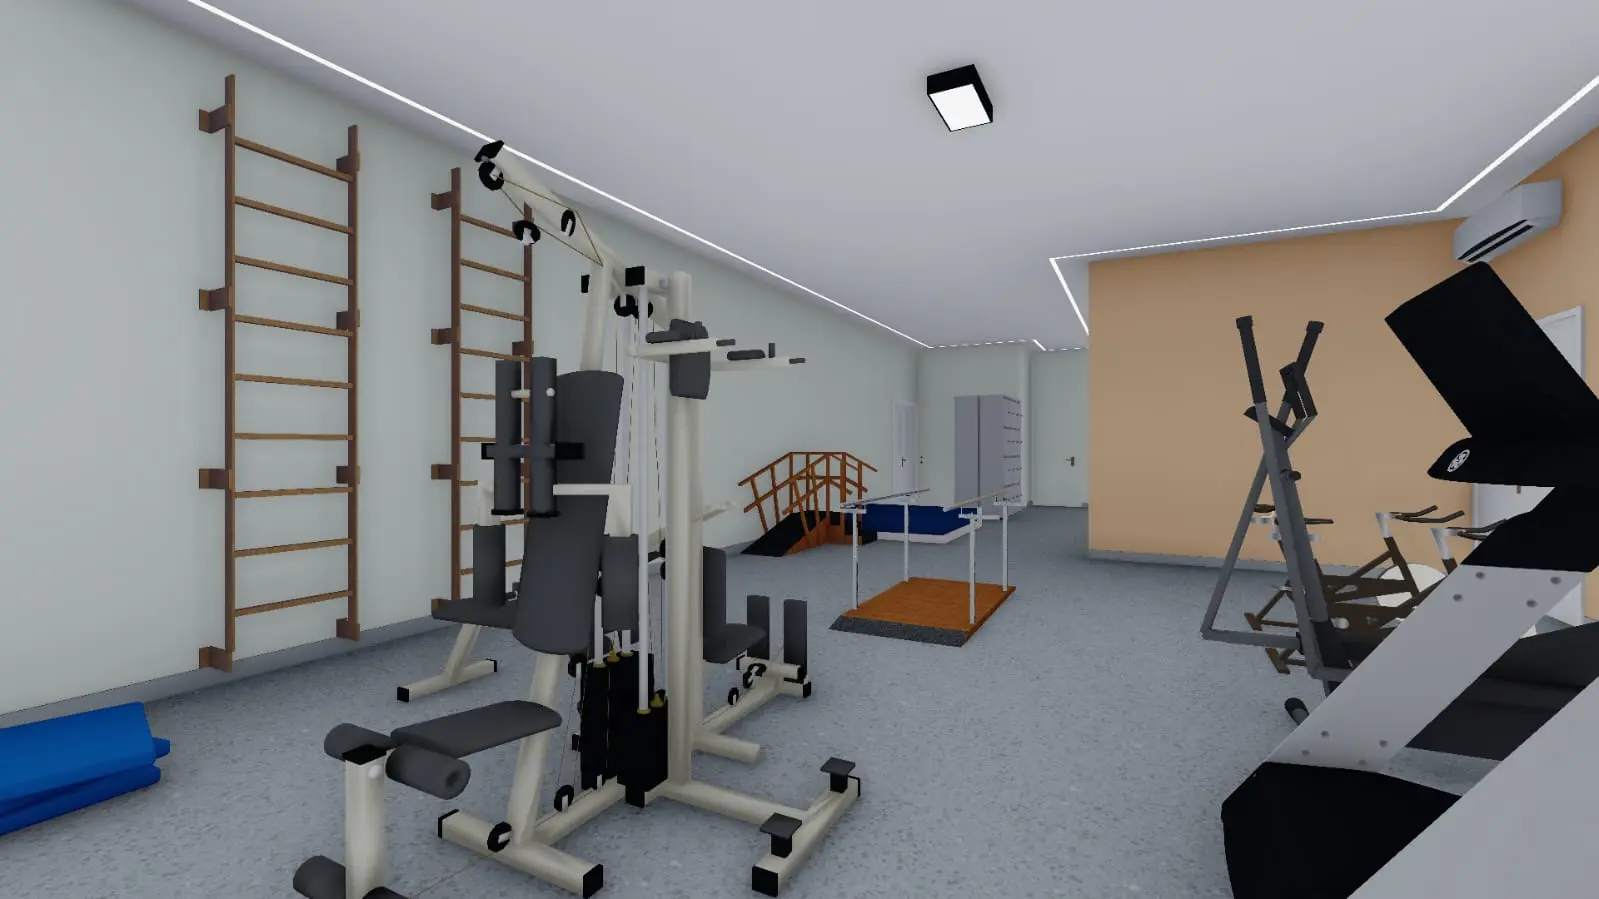 Policlínica sala de reabilitação com equipamentos de cinesioterapia e reabilitação motora, com 100 m² de área.